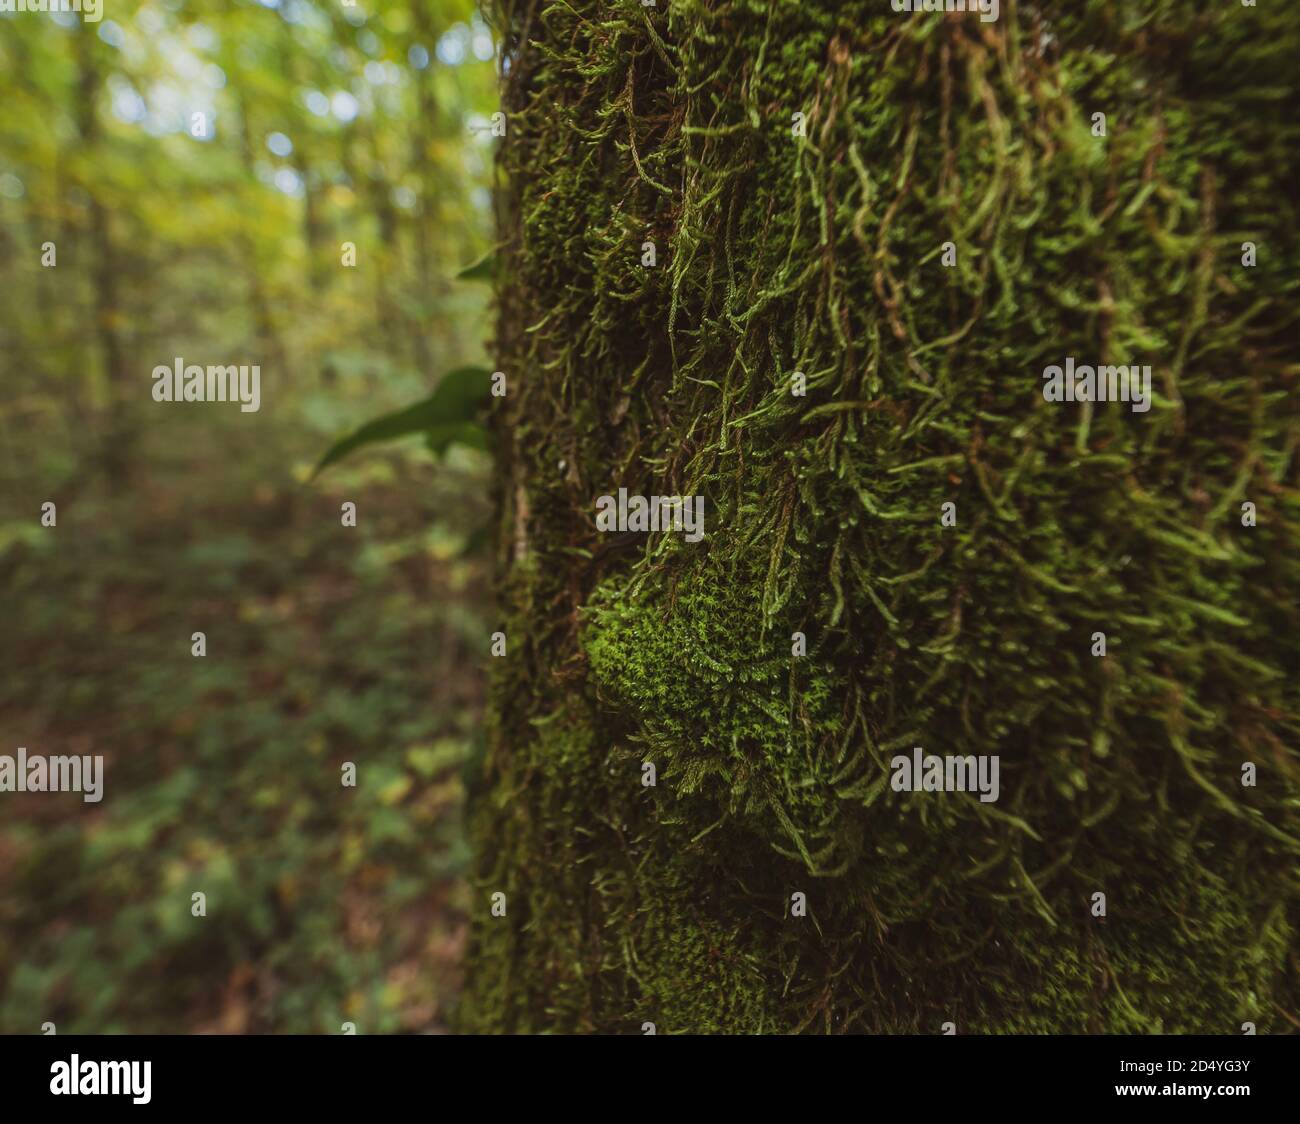 Cerca de musgos que crecen en un tronco de árbol en un bosque de otoño atmosférico y brumoso. Foto de stock